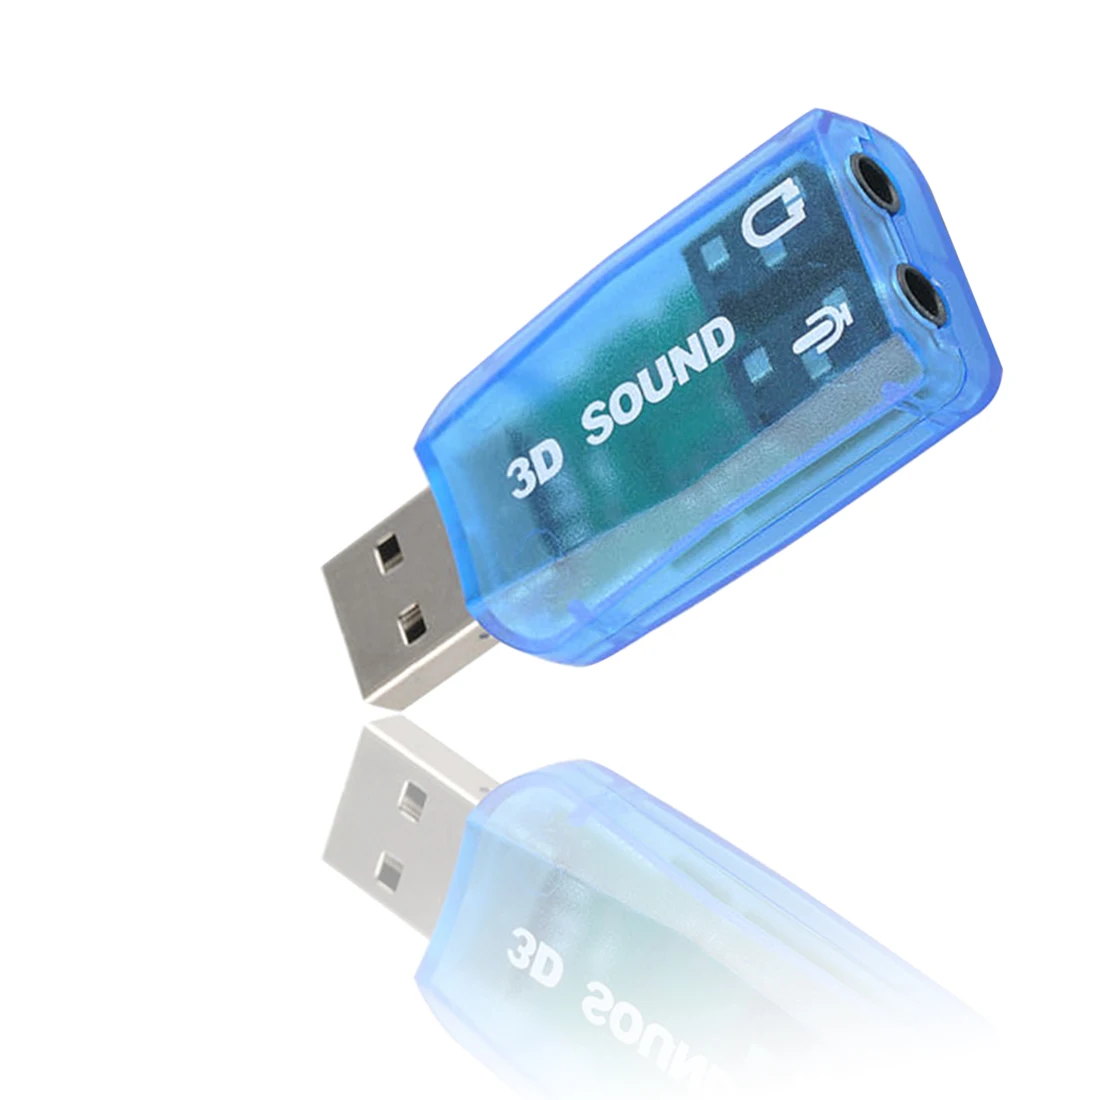 Новая USB звуковая карта внешняя 5,1 каналов w/3,5 мм разъем для наушников и микрофона интерфейс компьютера стерео микрофон аудио USB конвертер